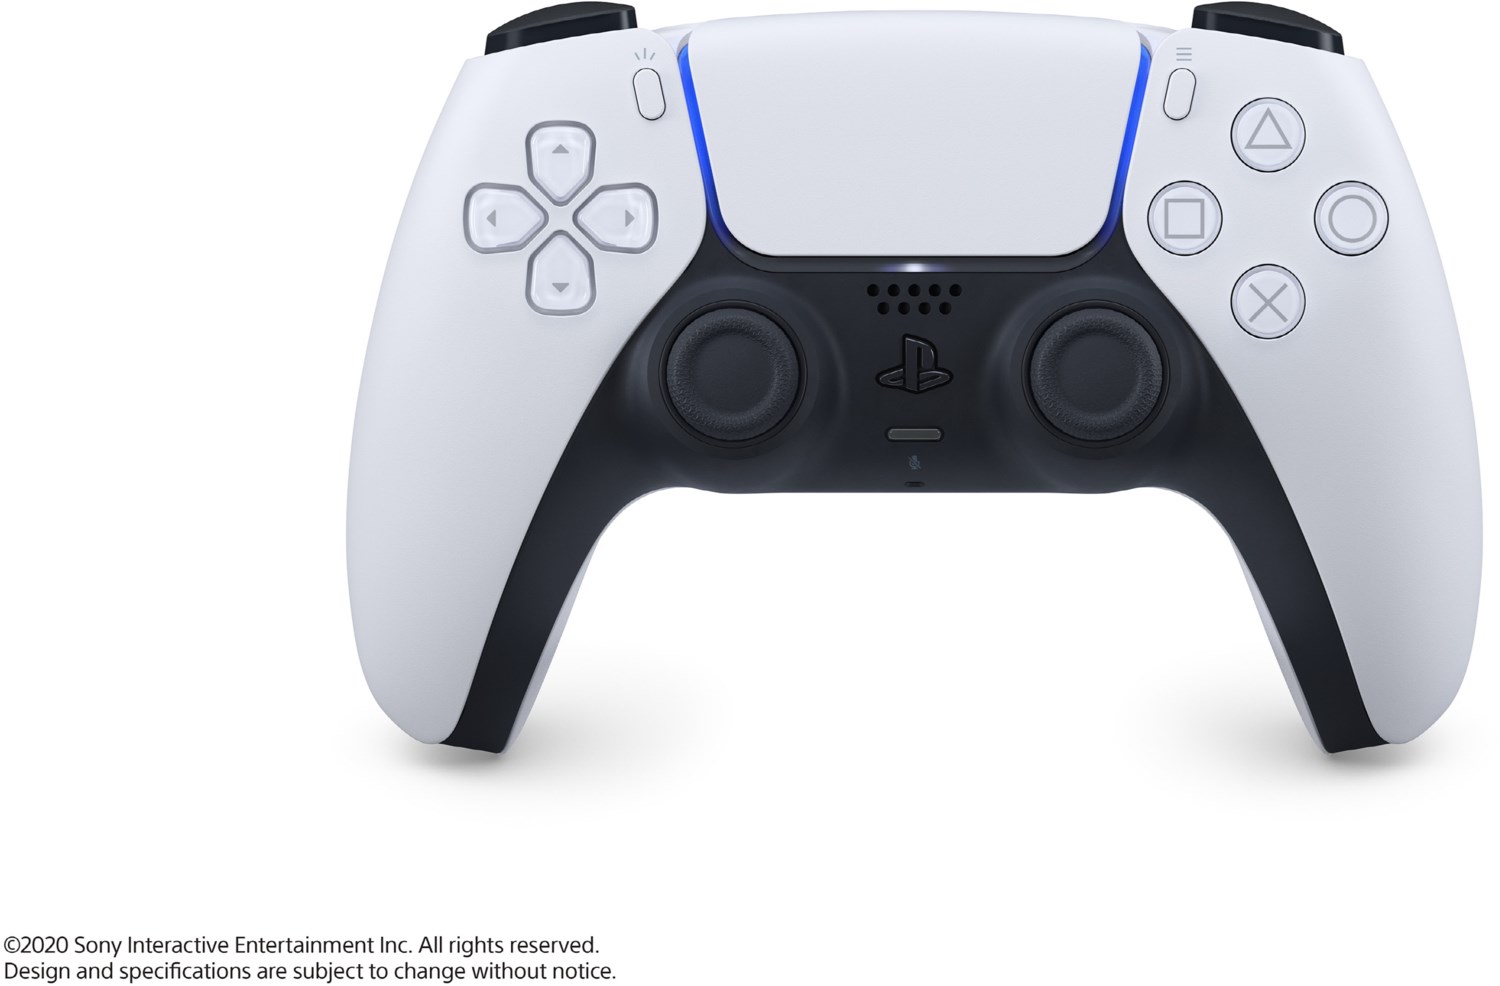 DualSense Wireless-Controller Controller für PlayStation 5 weiß